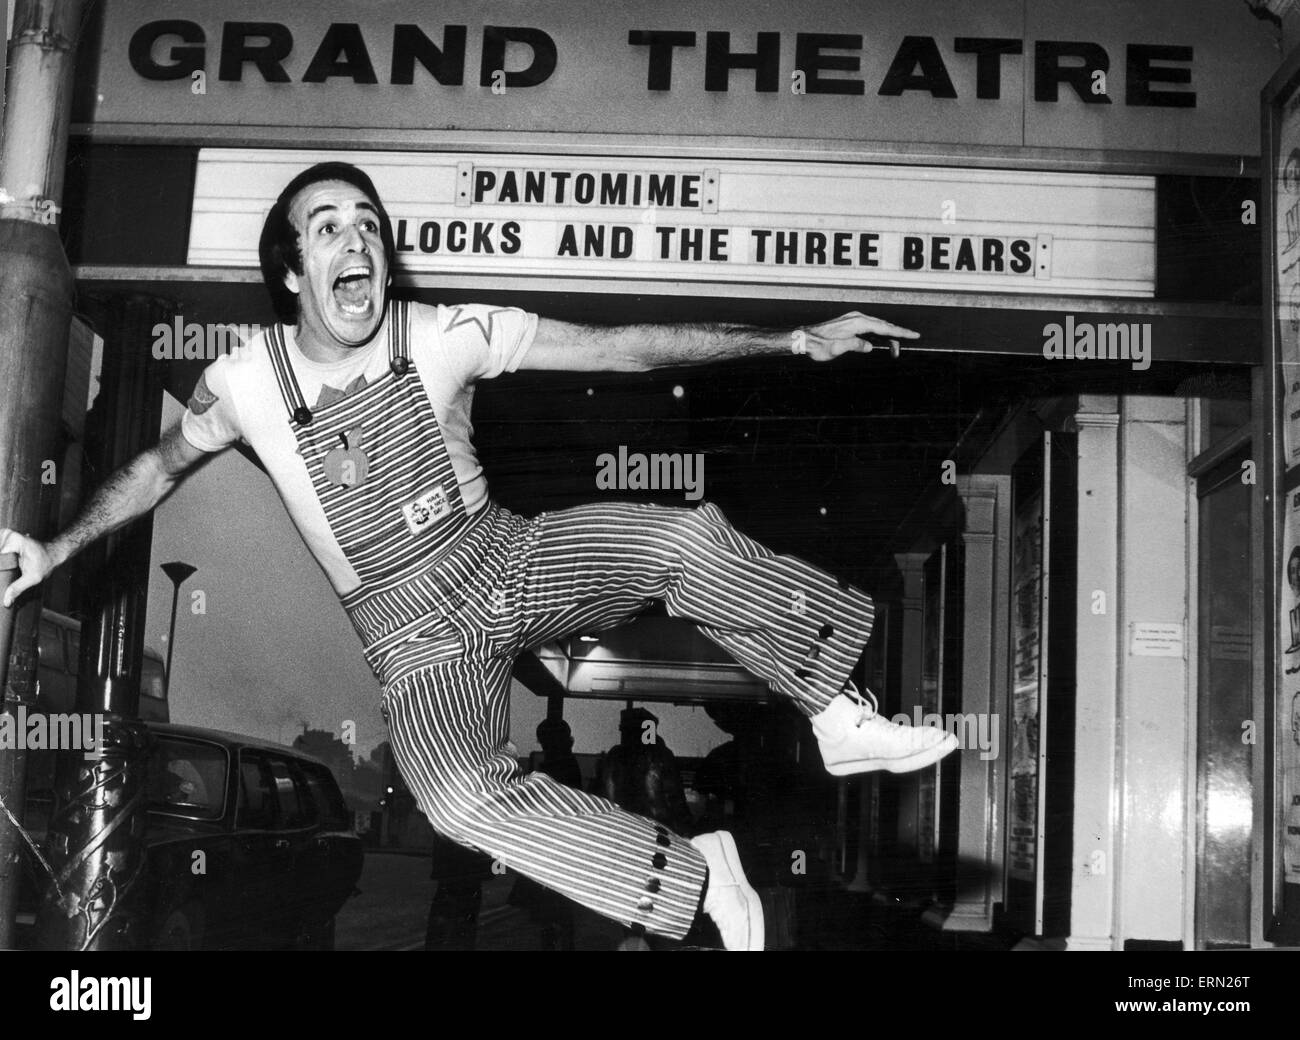 Don Maclean, actor y comediante, salta de alegría fuera del Grand Theatre en Birmingham, él es el protagonista en la pantomima Goldie bloqueos y los Tres Osos, fotografiado el 11 de enero de 1977. Foto de stock